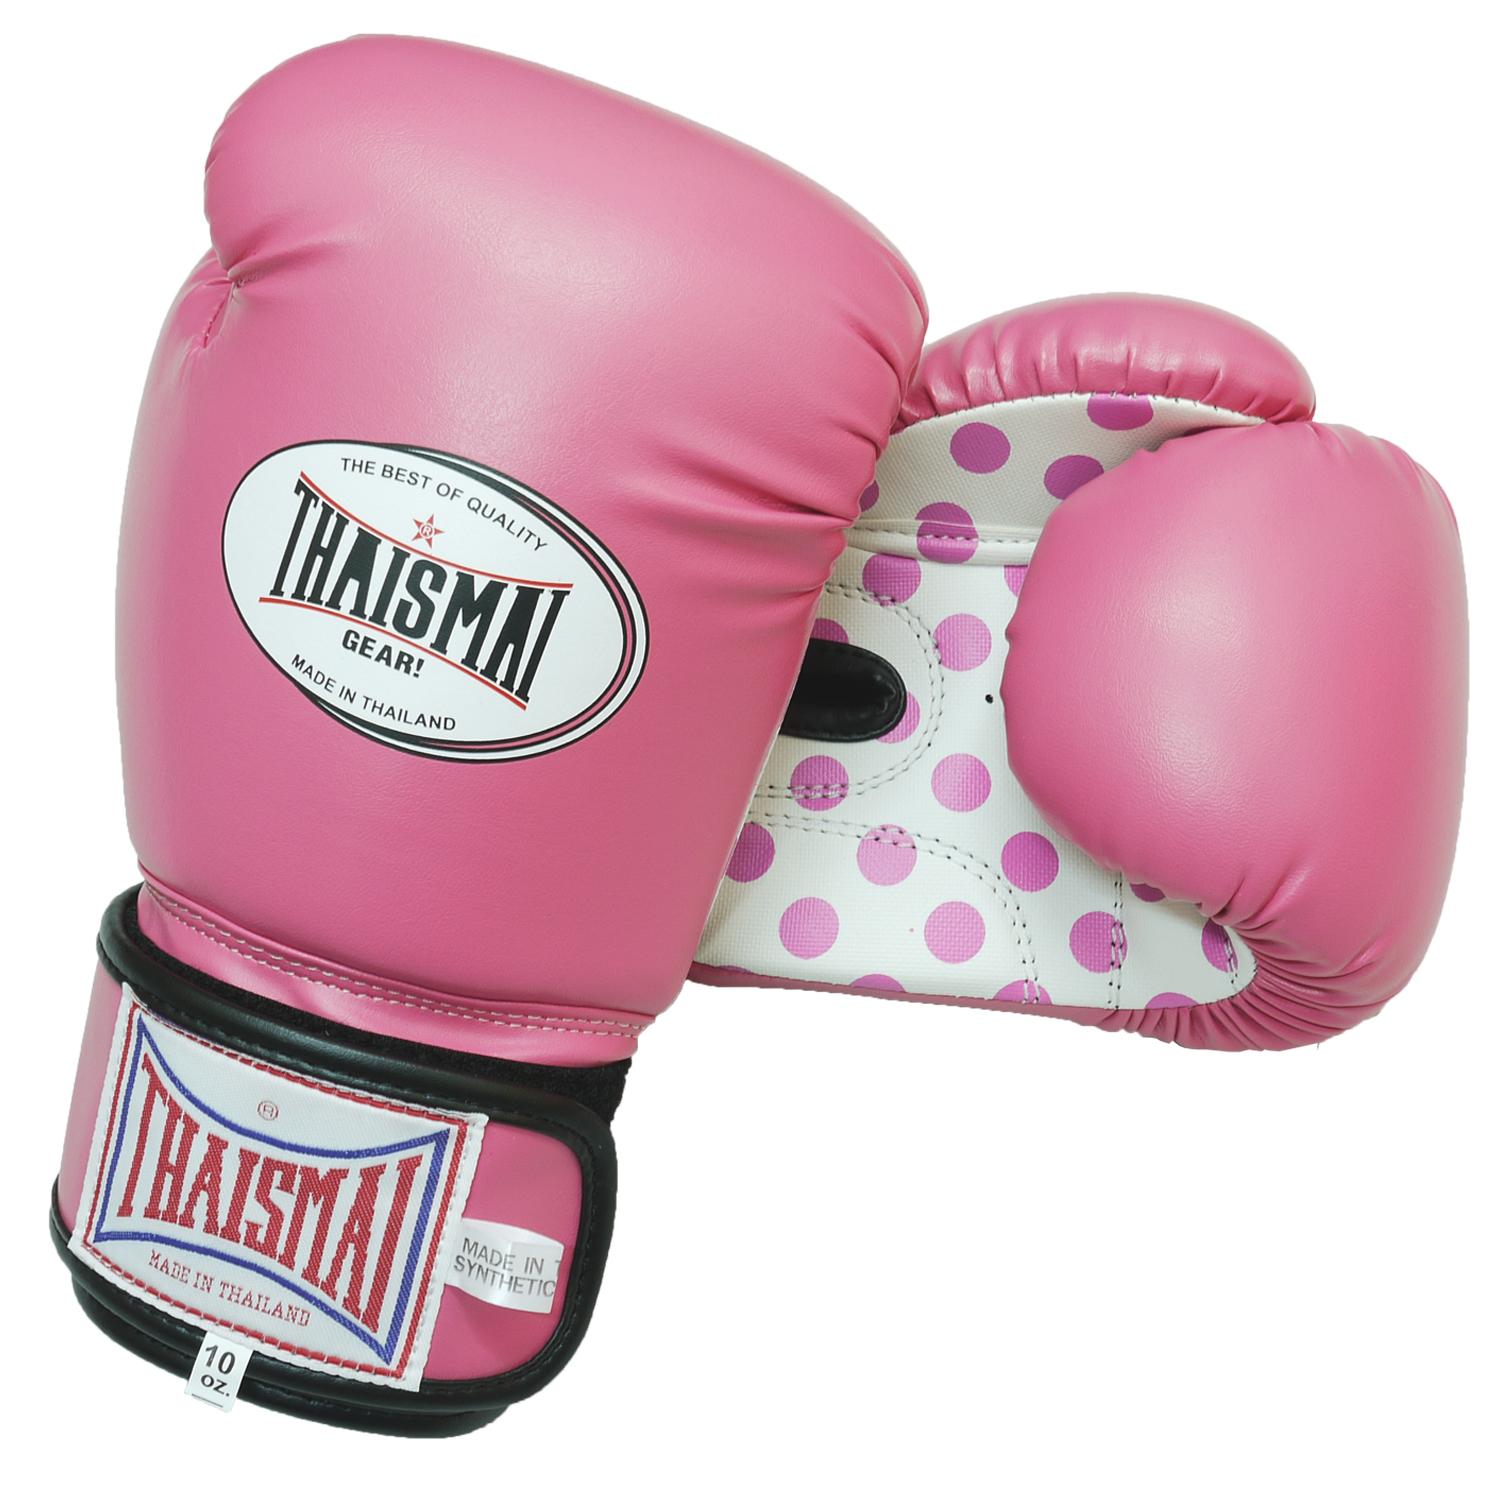 THAISMAI Boxing Gloves Women นวมชกมวย BG-124  PU Special  บานเย็นลายจุด